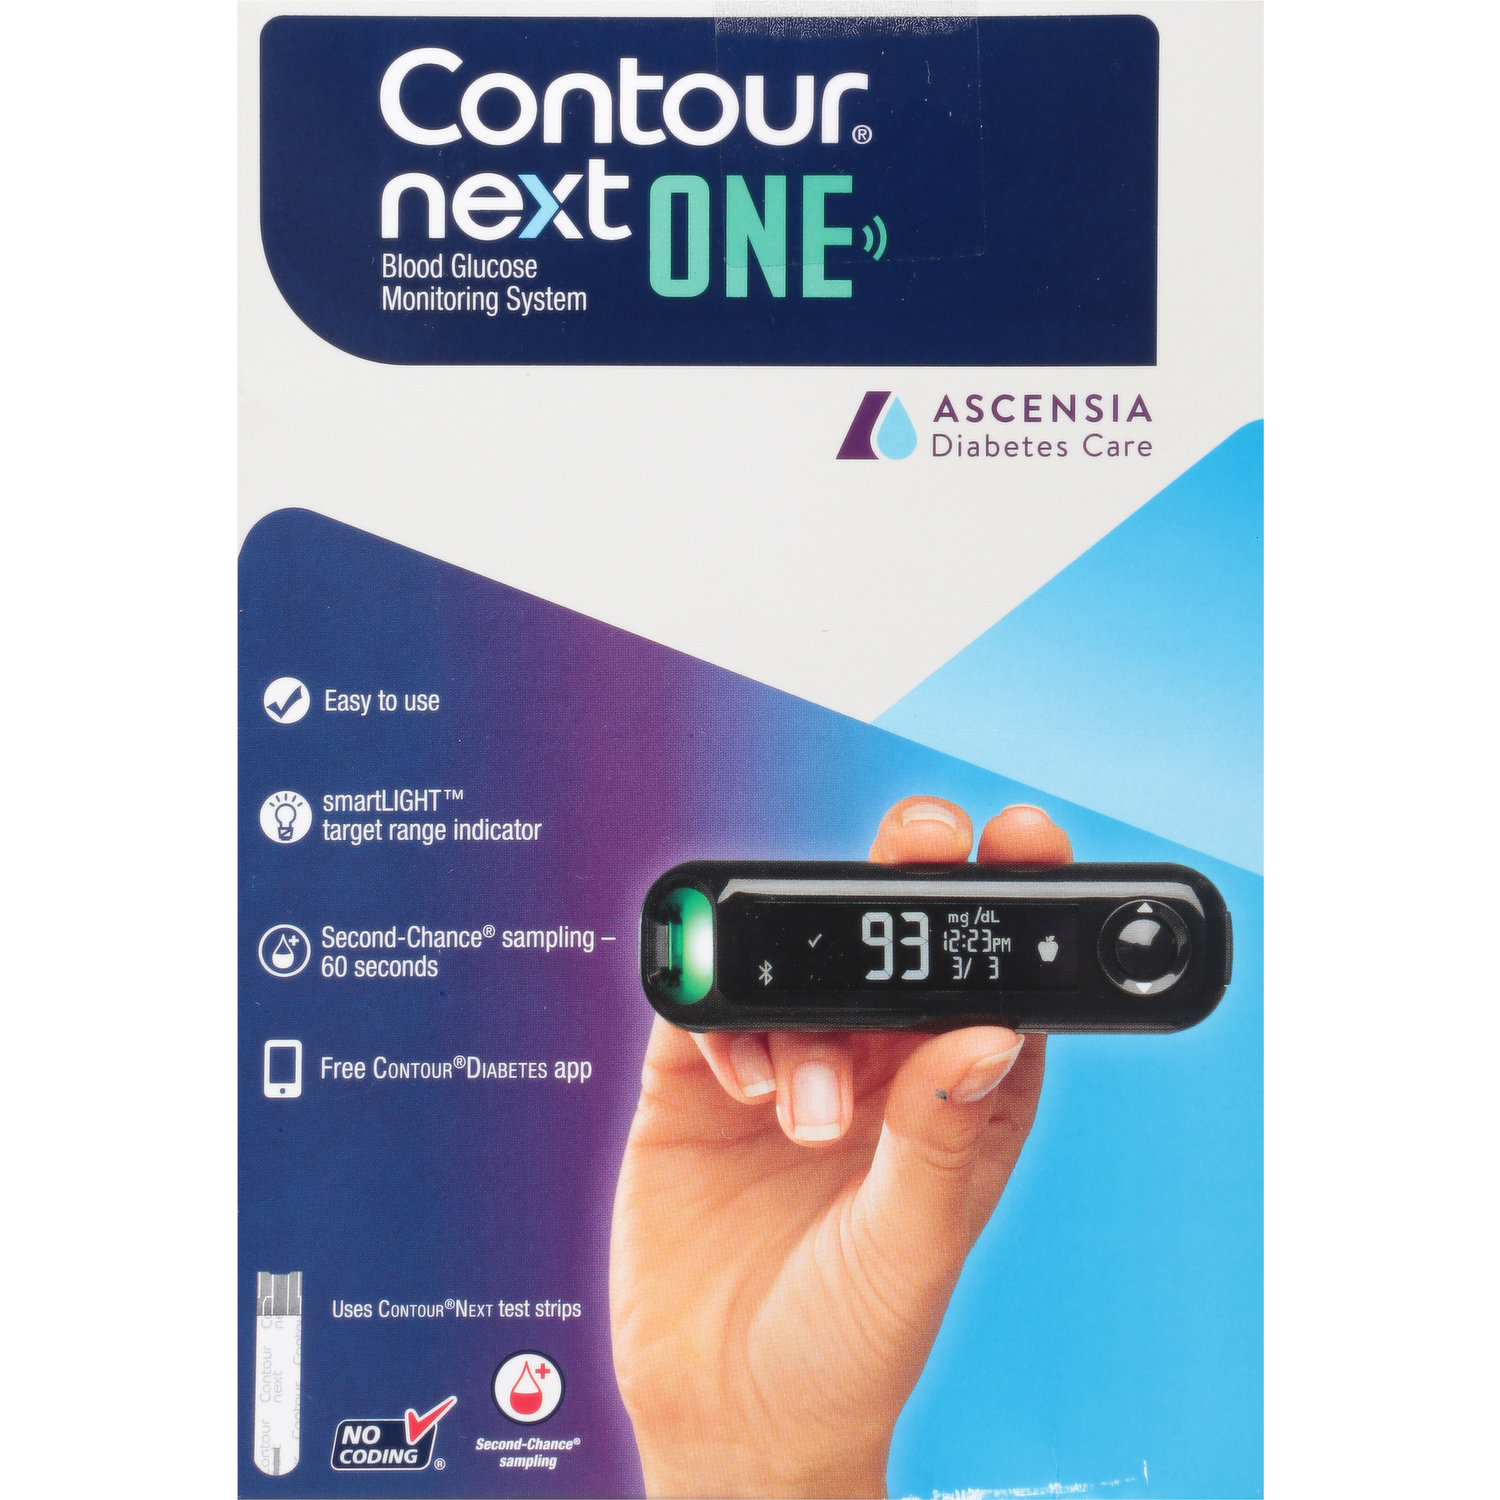 Contour - Contour, Next - Blood Glucose Monitoring System, USB, Shop